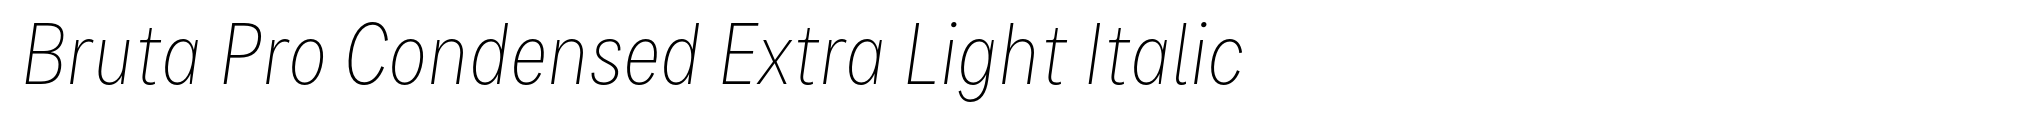 Bruta Pro Condensed Extra Light Italic image